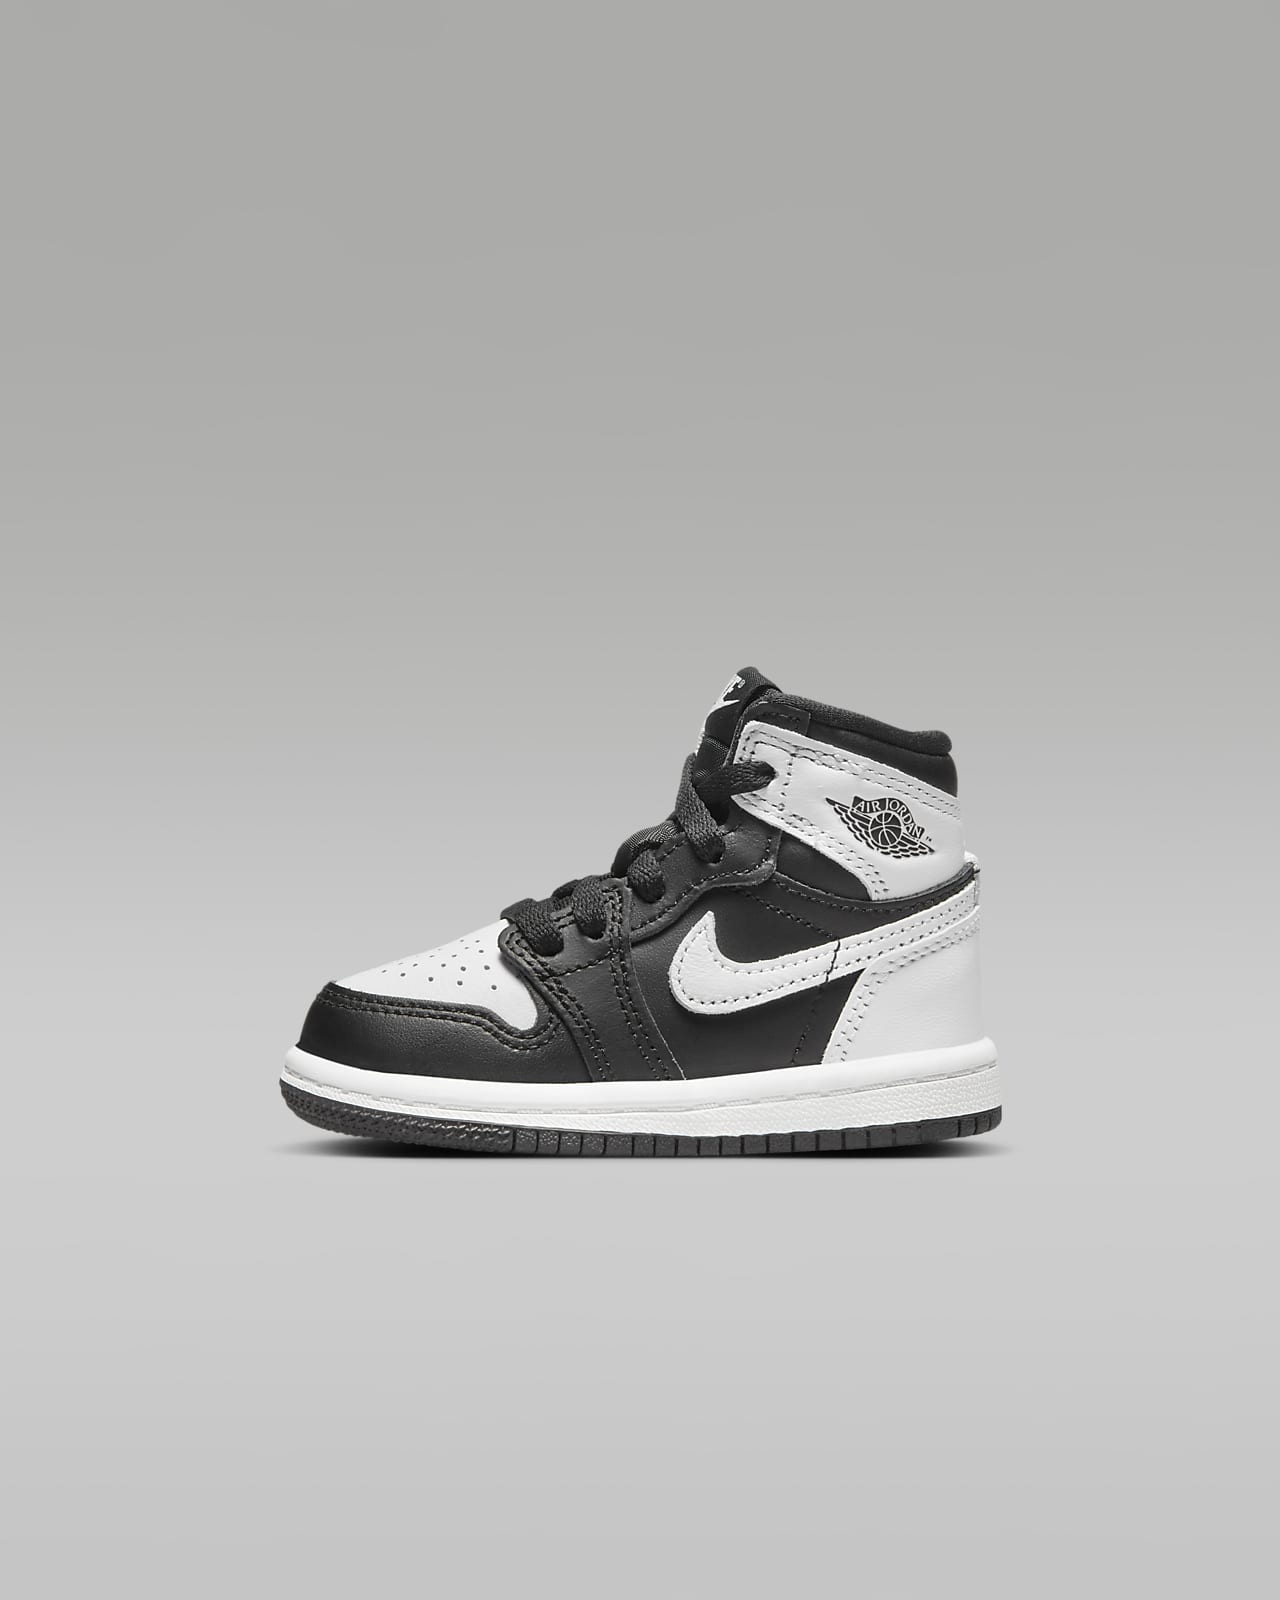 Jordan 1 Retro High OG "Black & White" Baby/Toddler Shoes